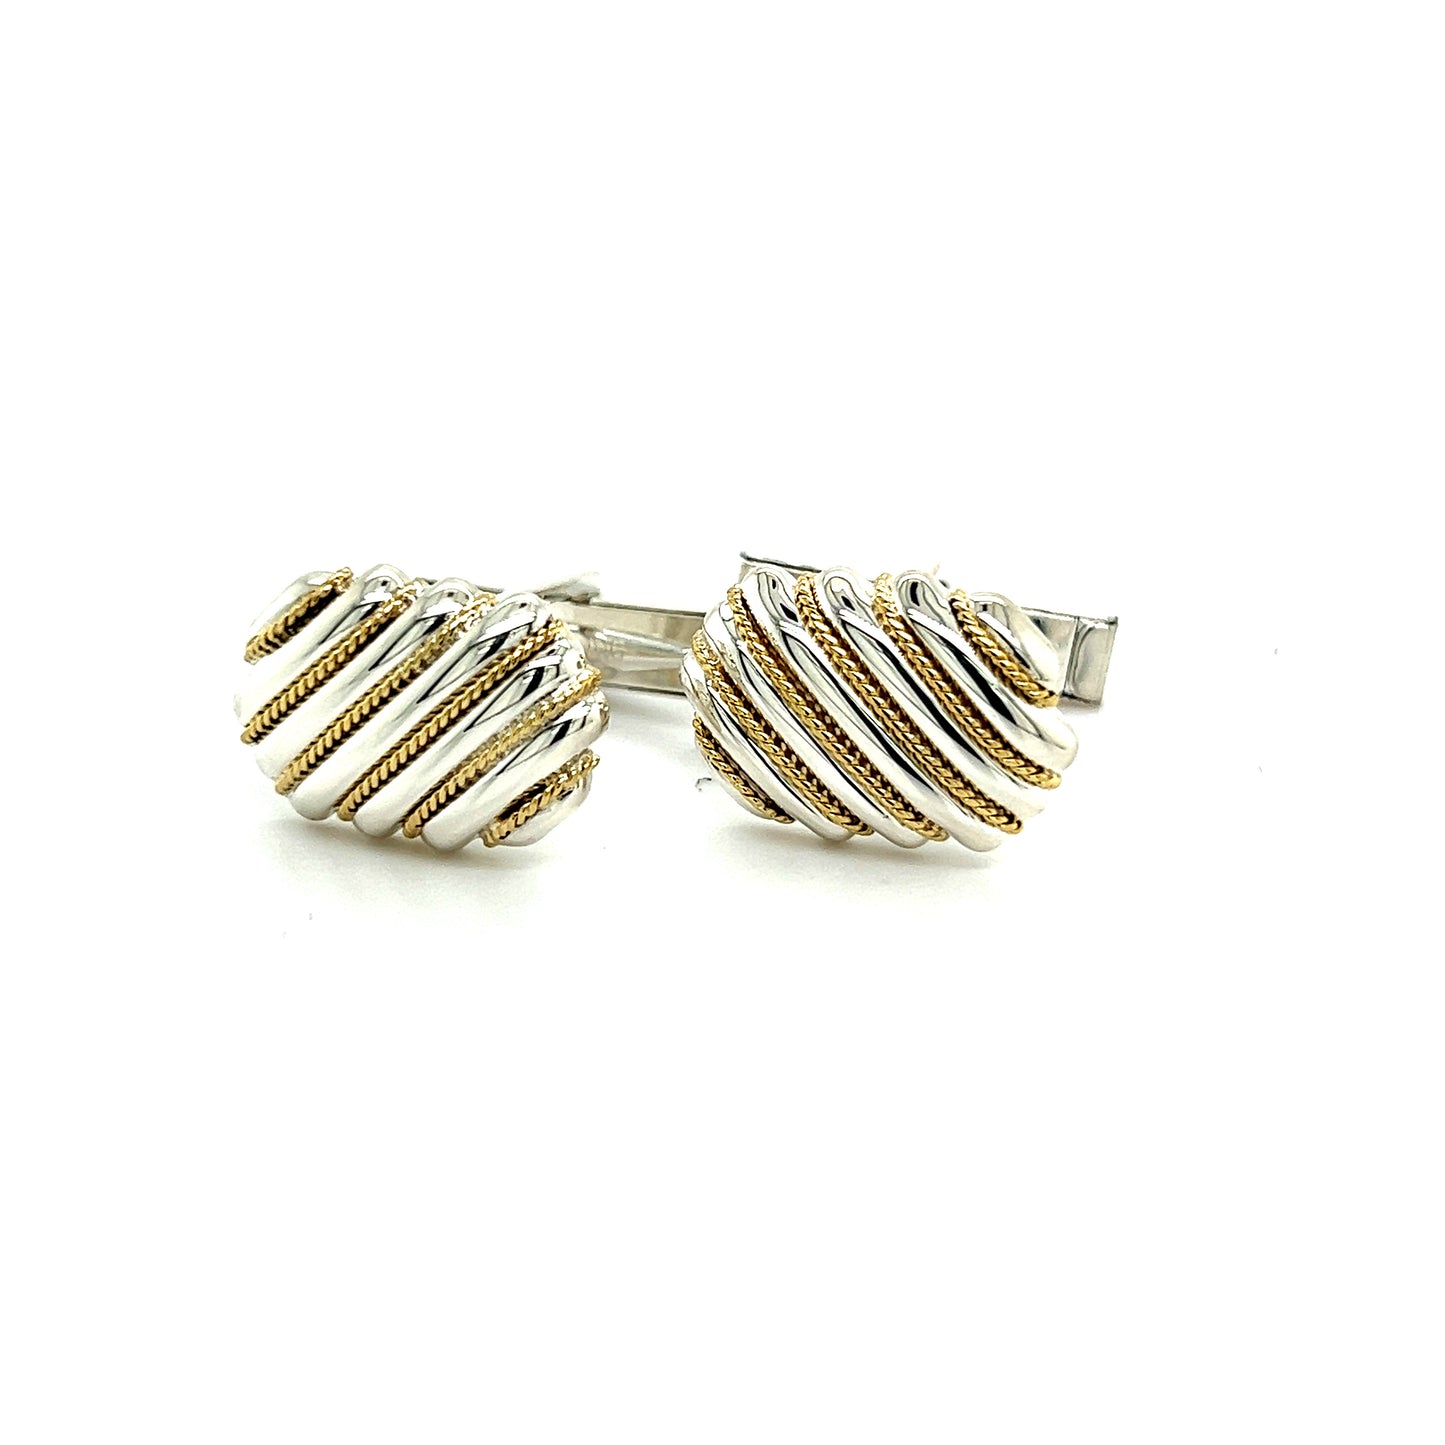 Tiffany & Co Estate Cufflinks 18k Y Gold + Sterling Silver TIF296 - Certified Fine Jewelry